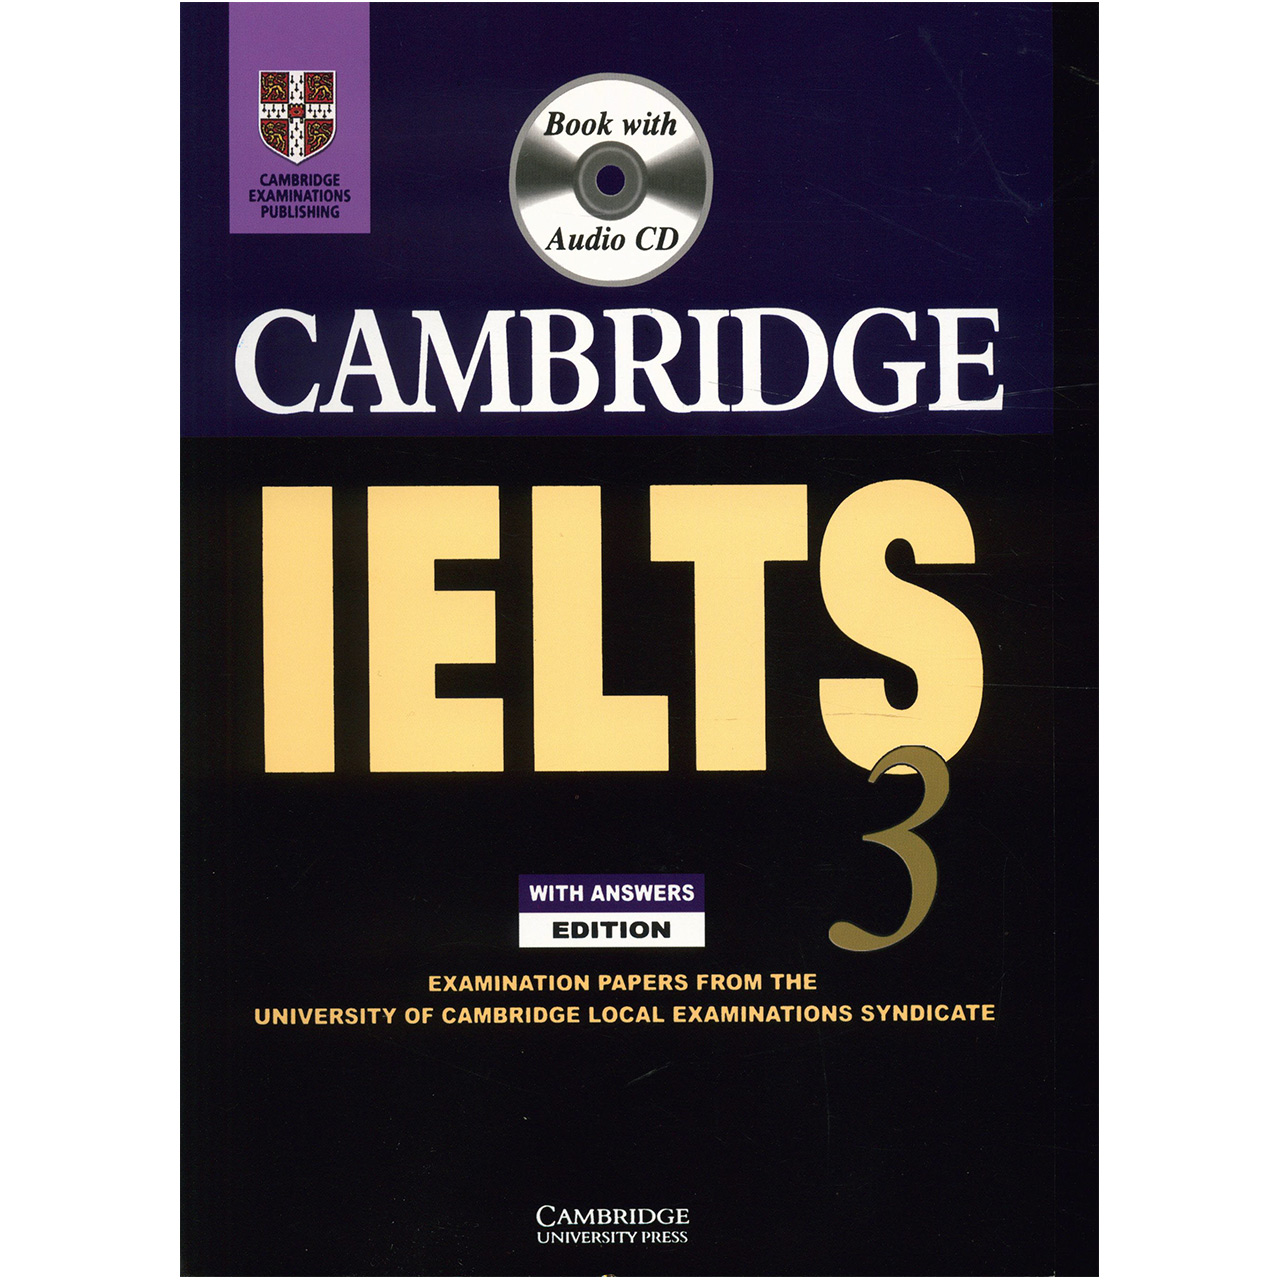 کتاب Cambridge IELTS 3 اثر جمعی از نویسندگان